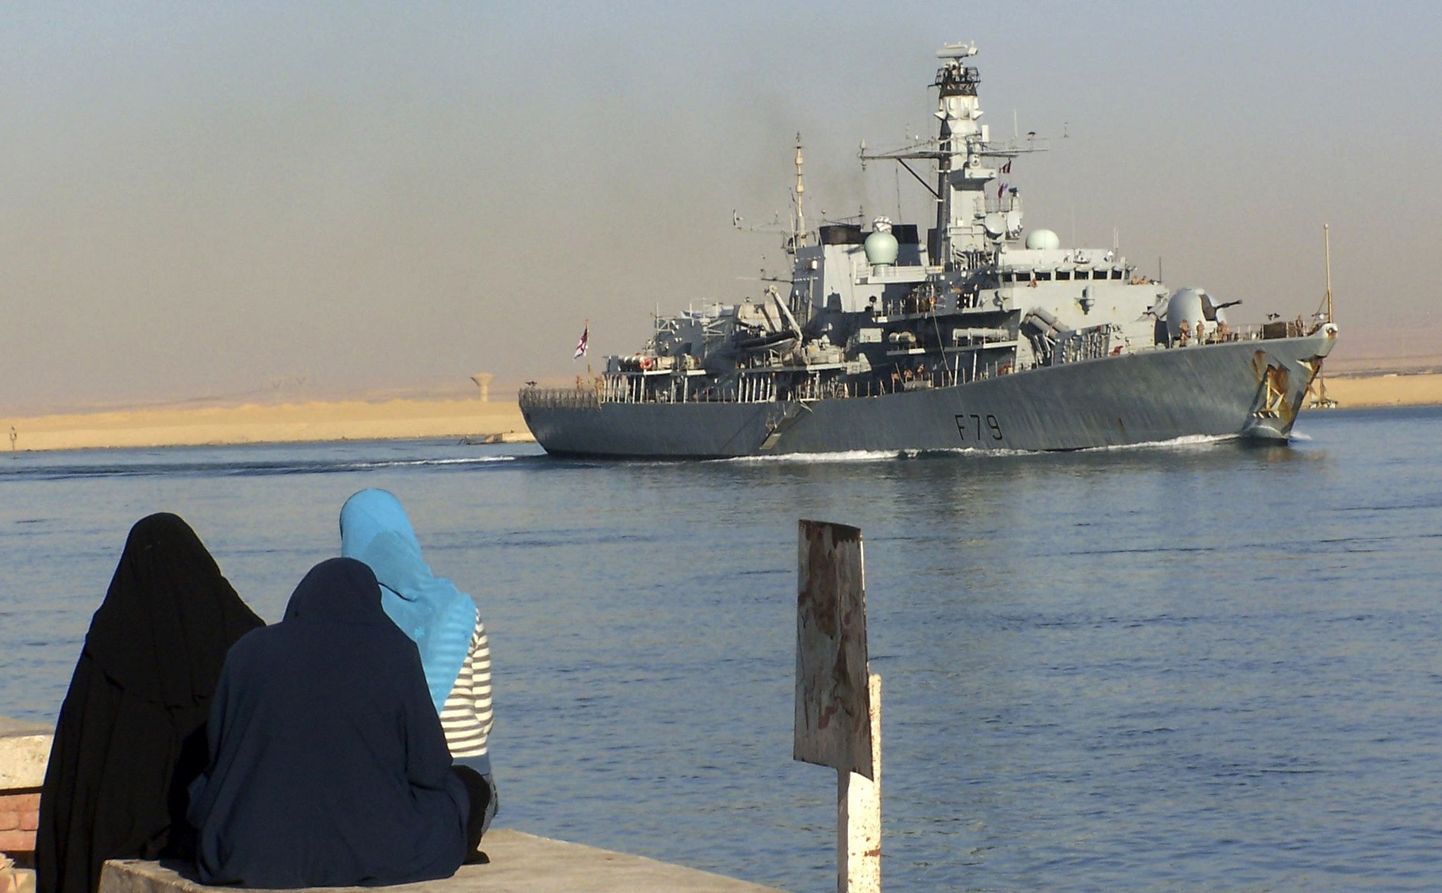 Briti sõjalaevastiku fregatt HMS Portland läbimas Suessi kanalit.